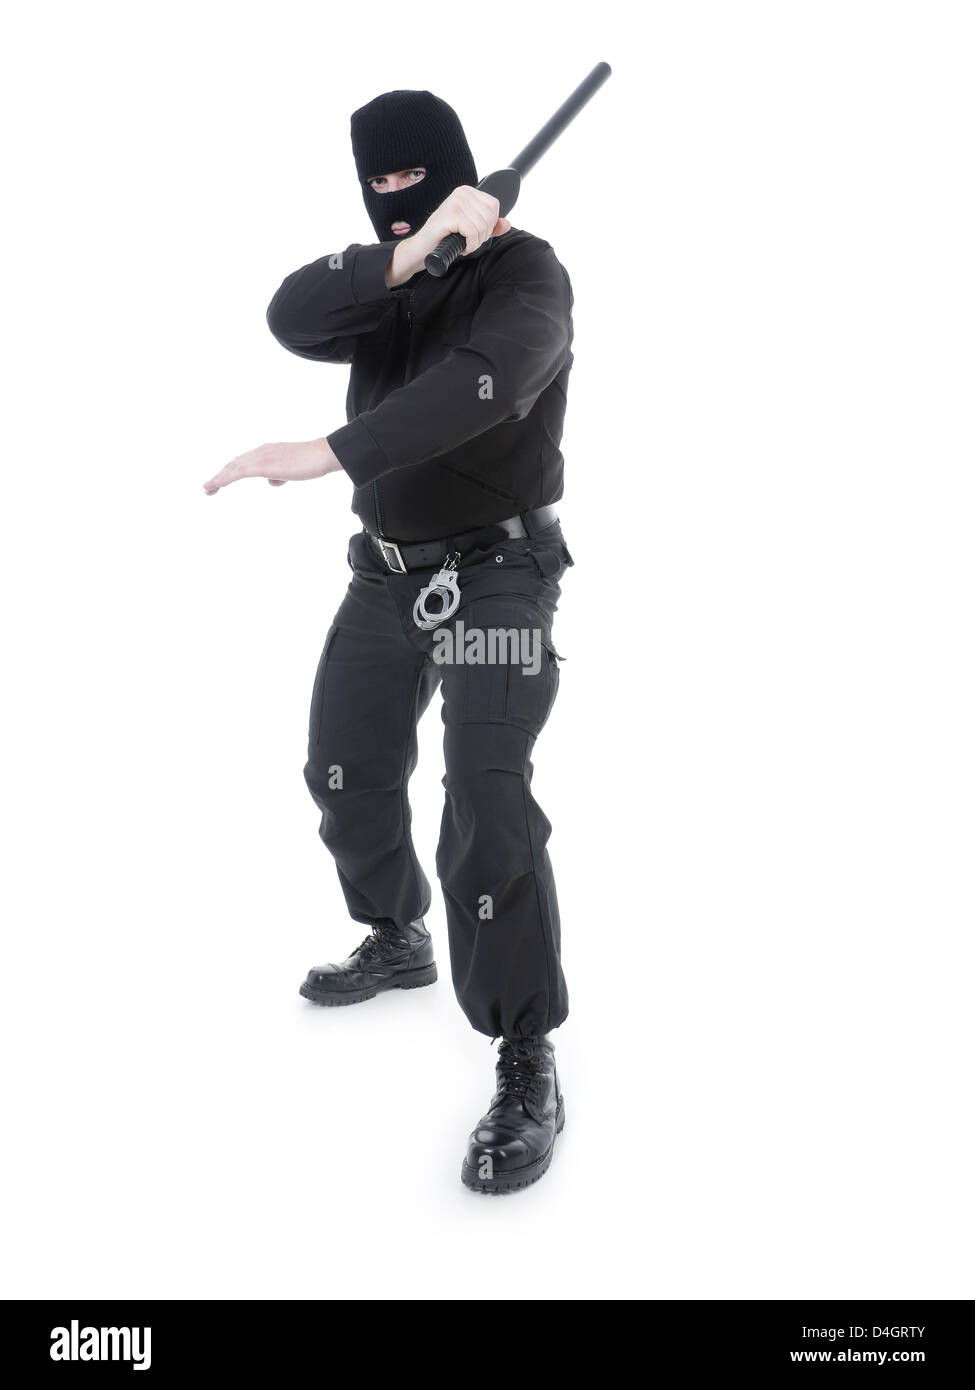 La police anti-terroriste mec uniforme noir et black mask holding police club fermement dans une main posée dans l'air Banque D'Images